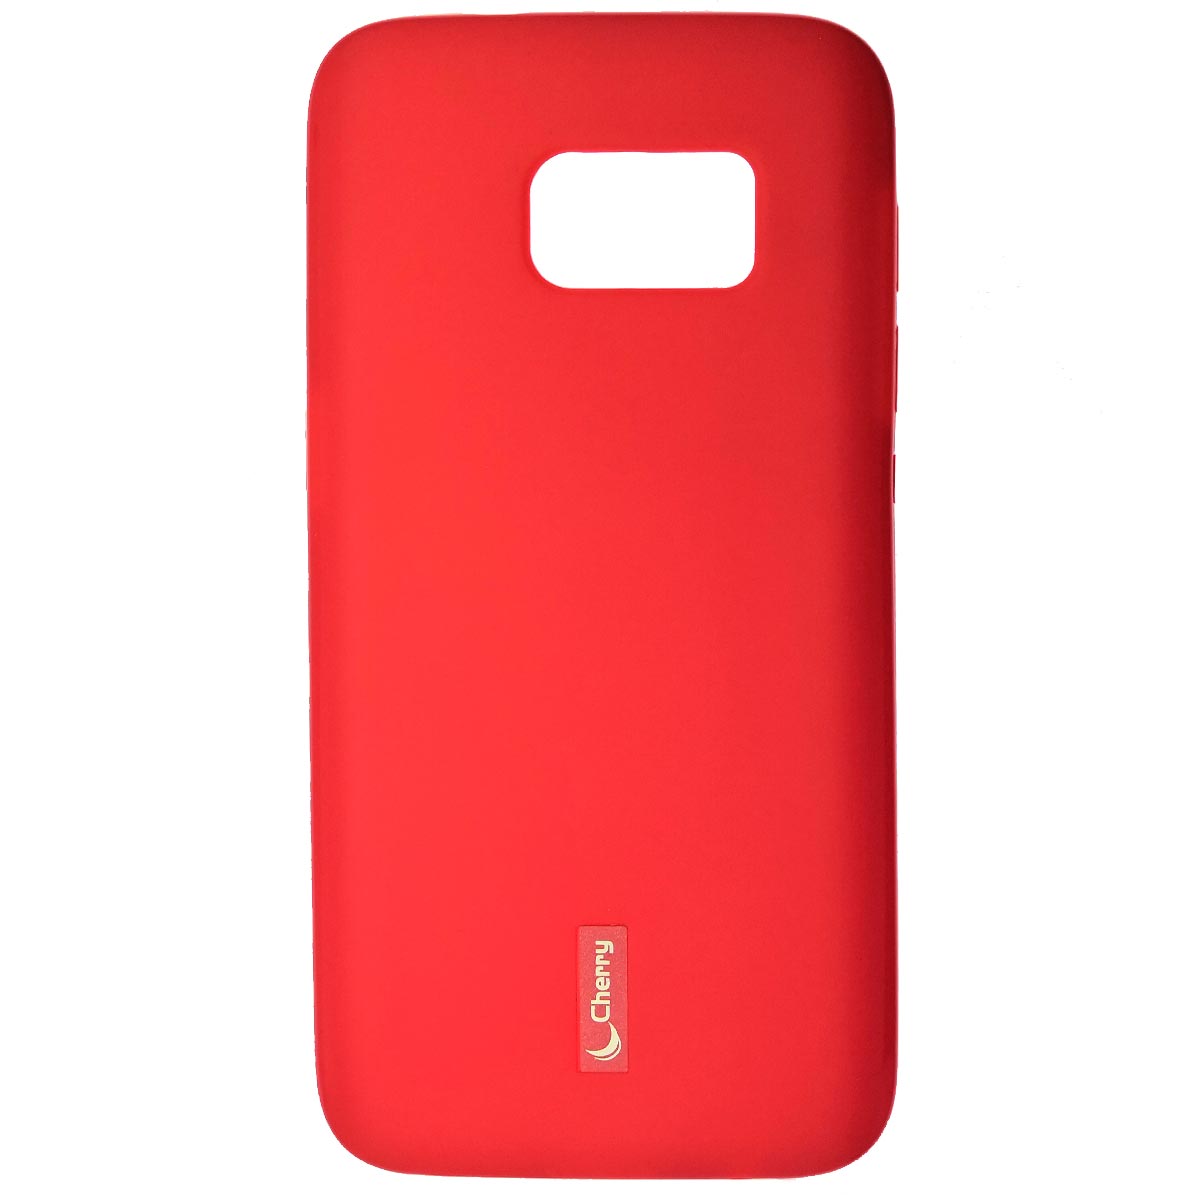 Чехол накладка Cherry для SAMSUNG Galaxy S7 (SM-G930), силикон, цвет красный